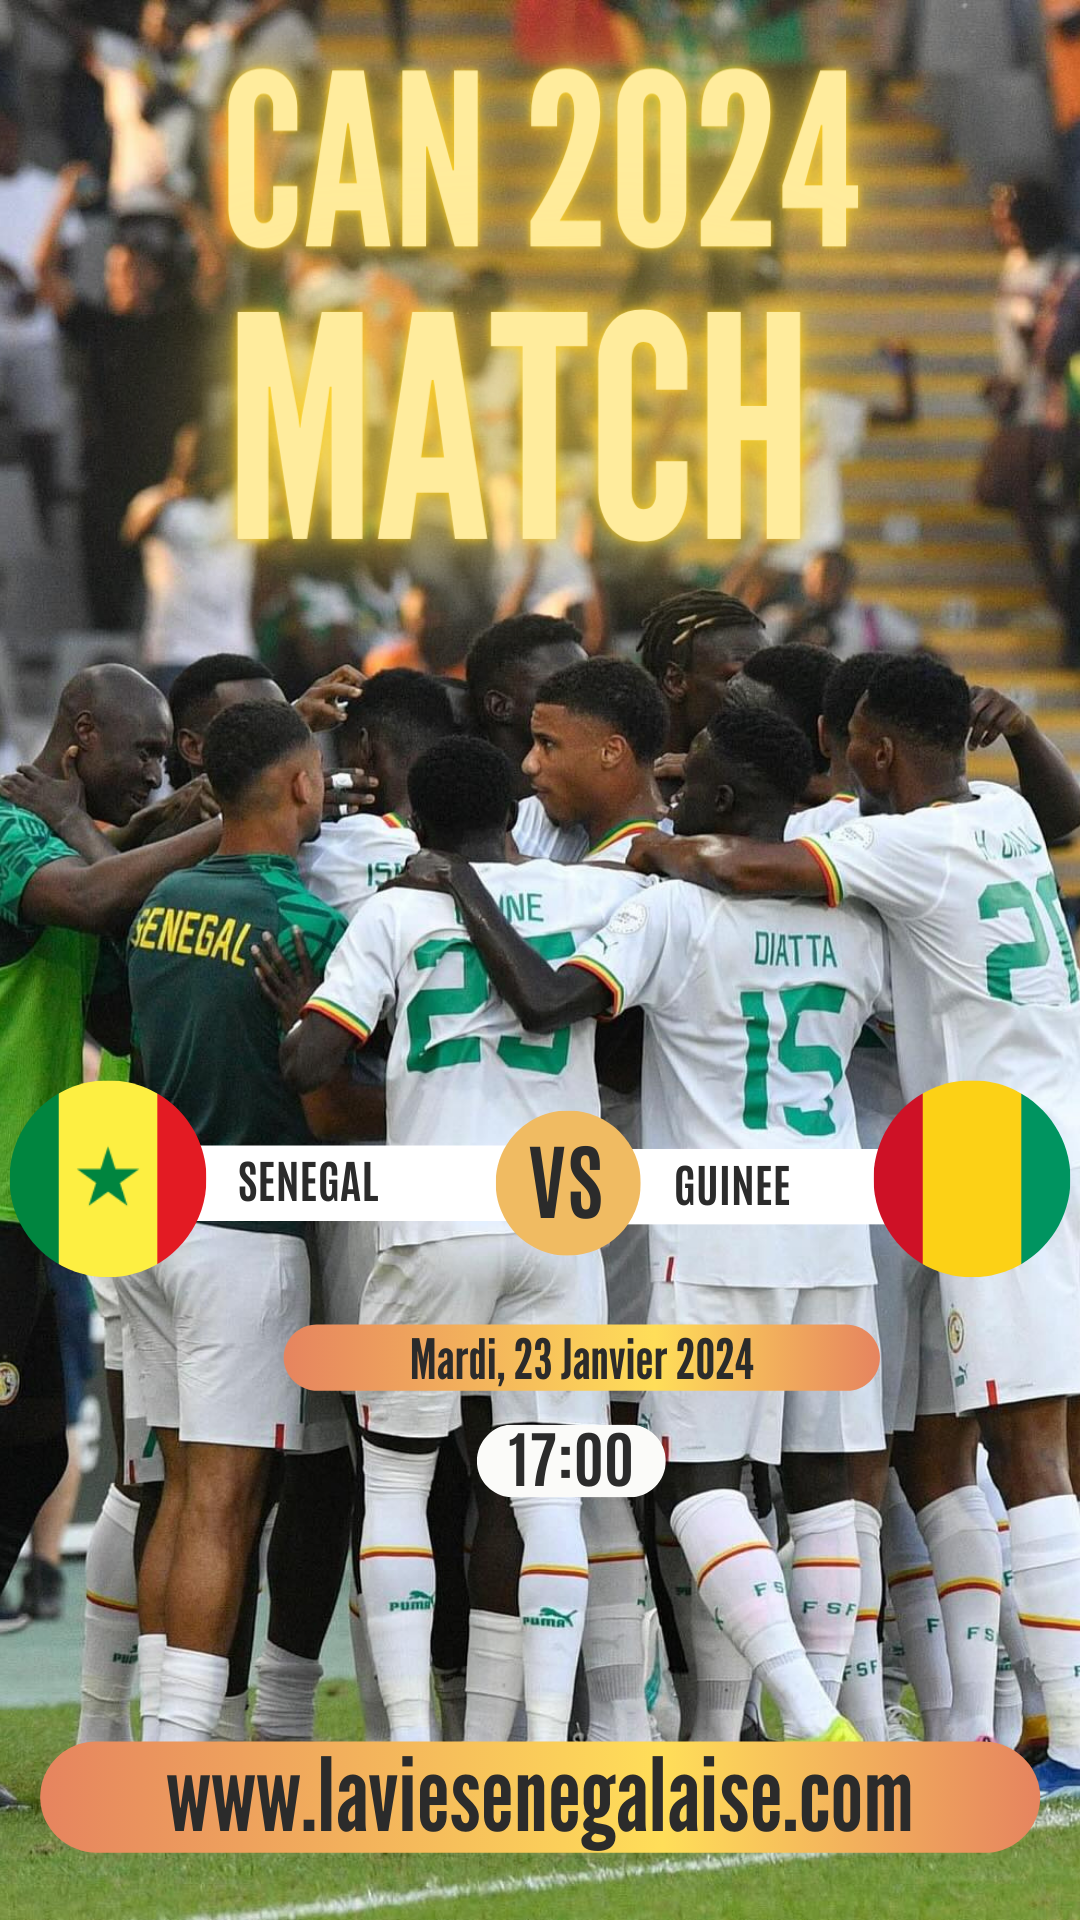 Sénégal Vs Guinée